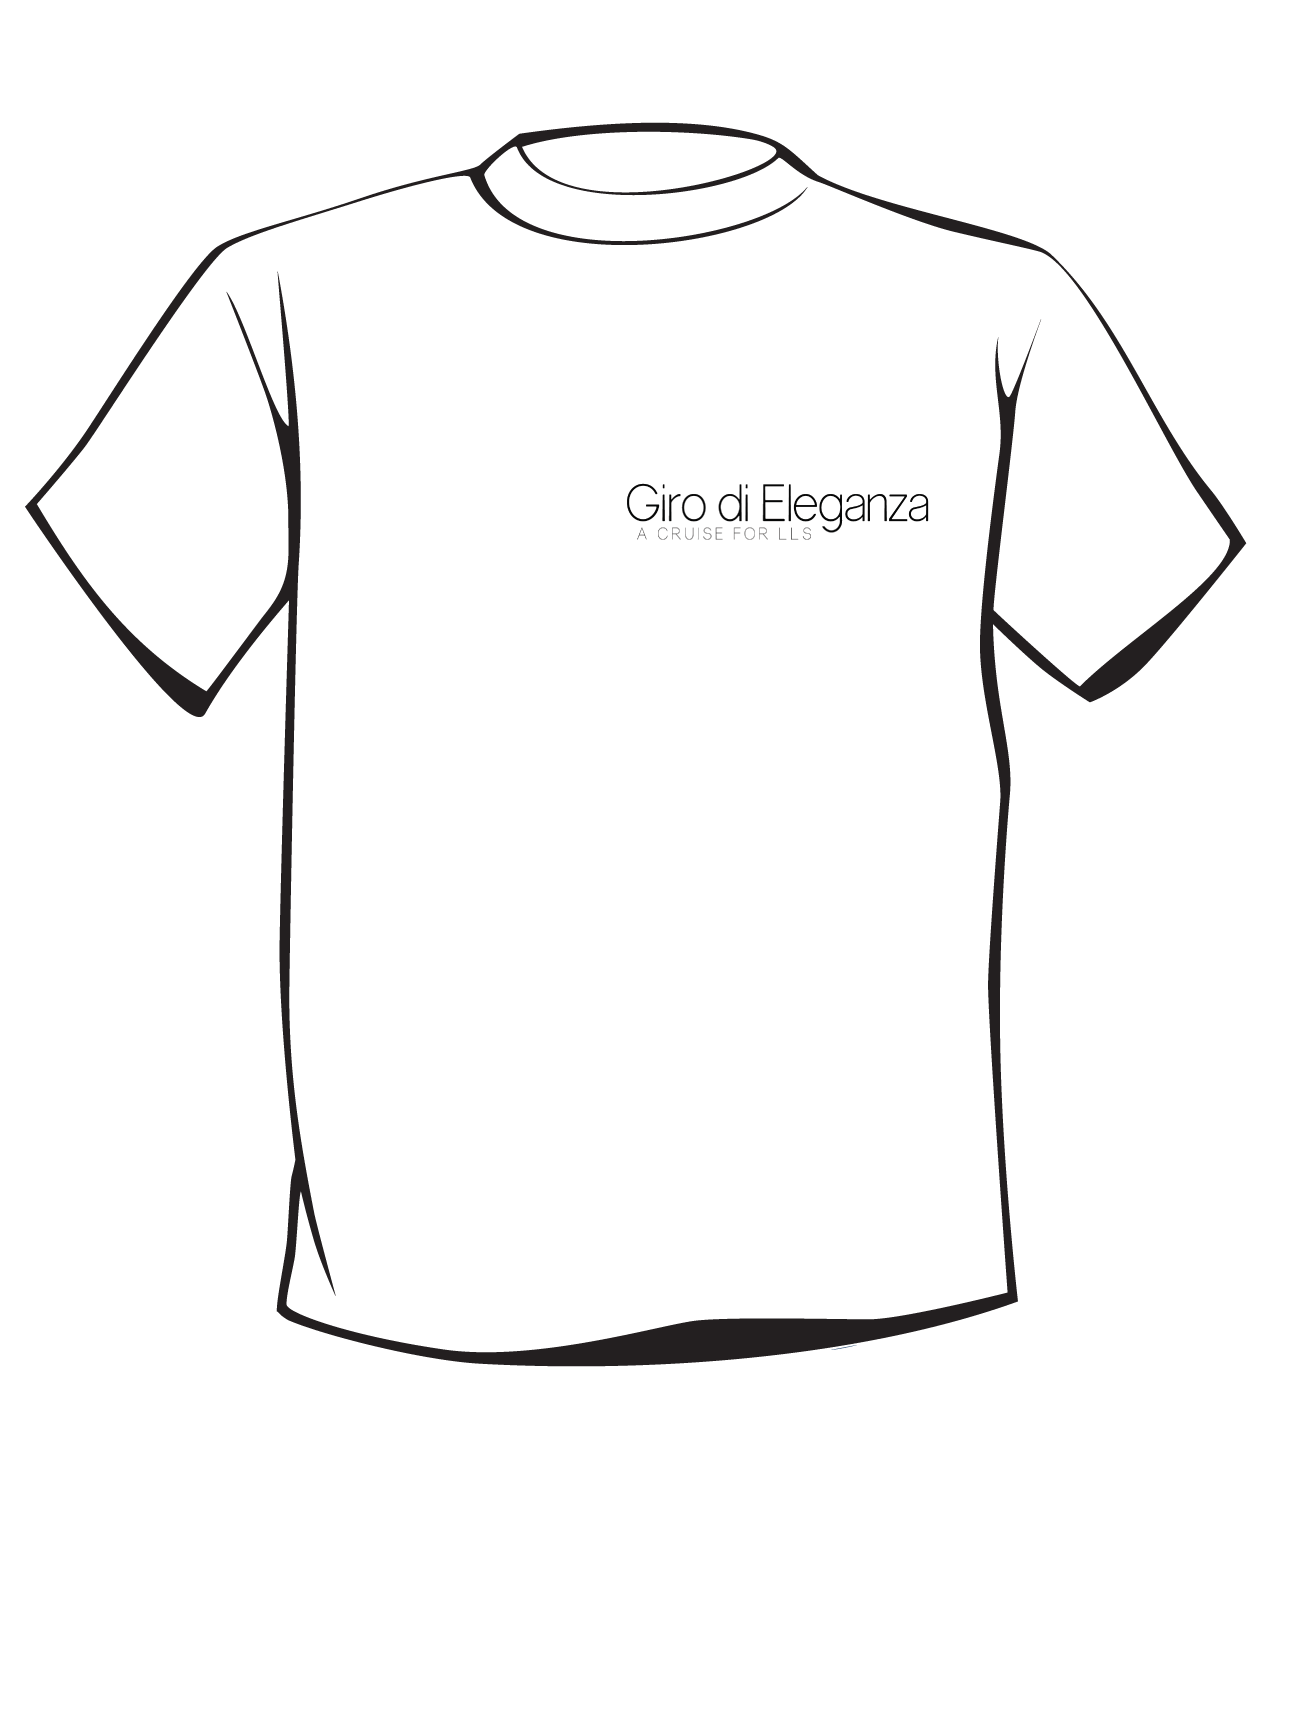 Giro di Eleganza T Shirt Design